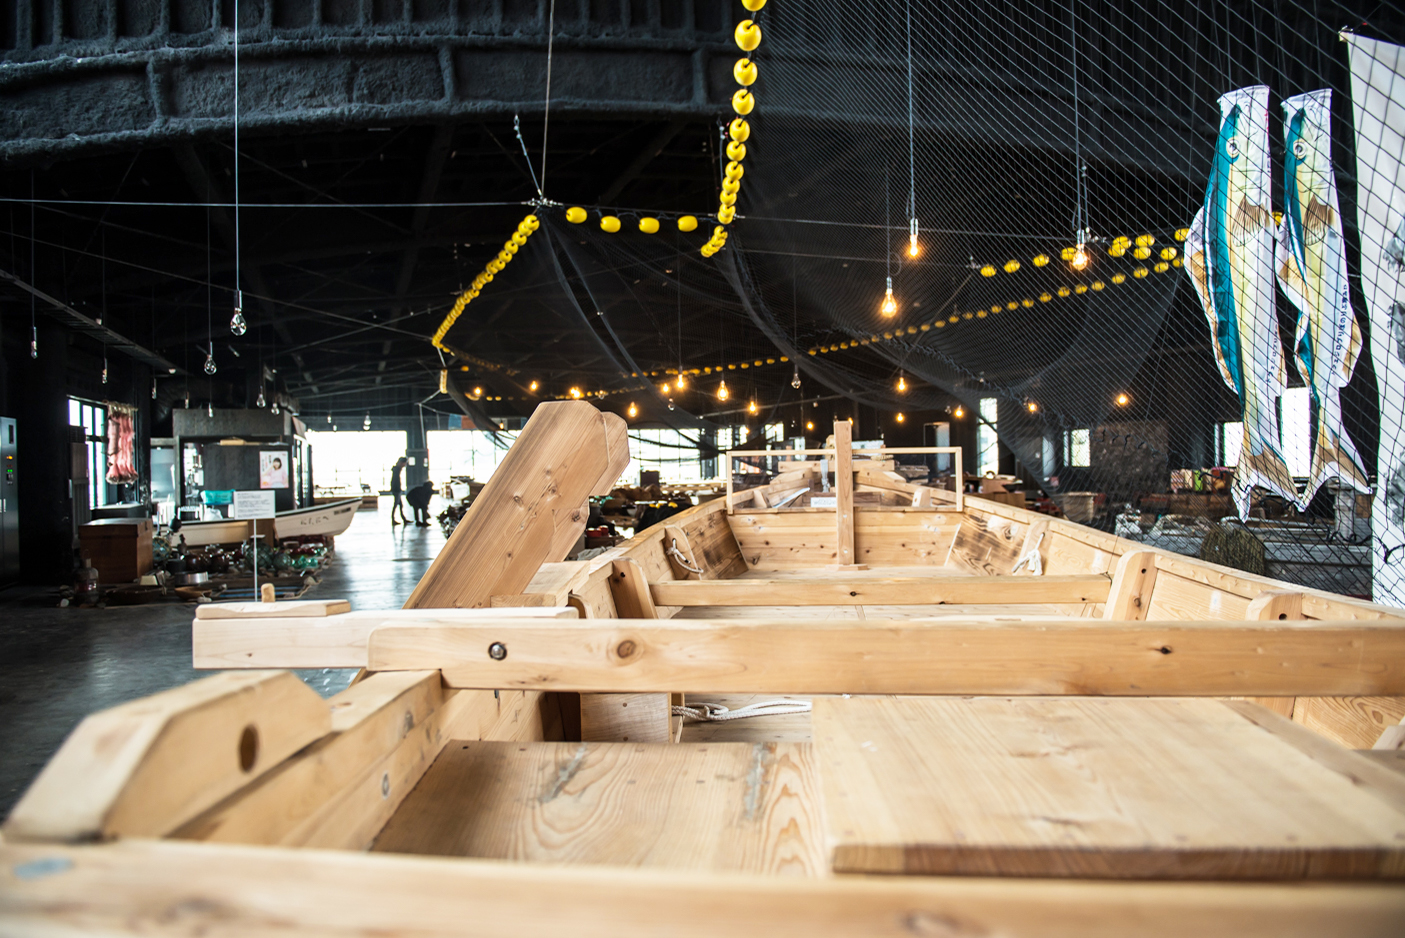 ドブネ テント テンマ 氷見の木造和船の話 富山県氷見市iju 移住 応援センター みらいエンジン